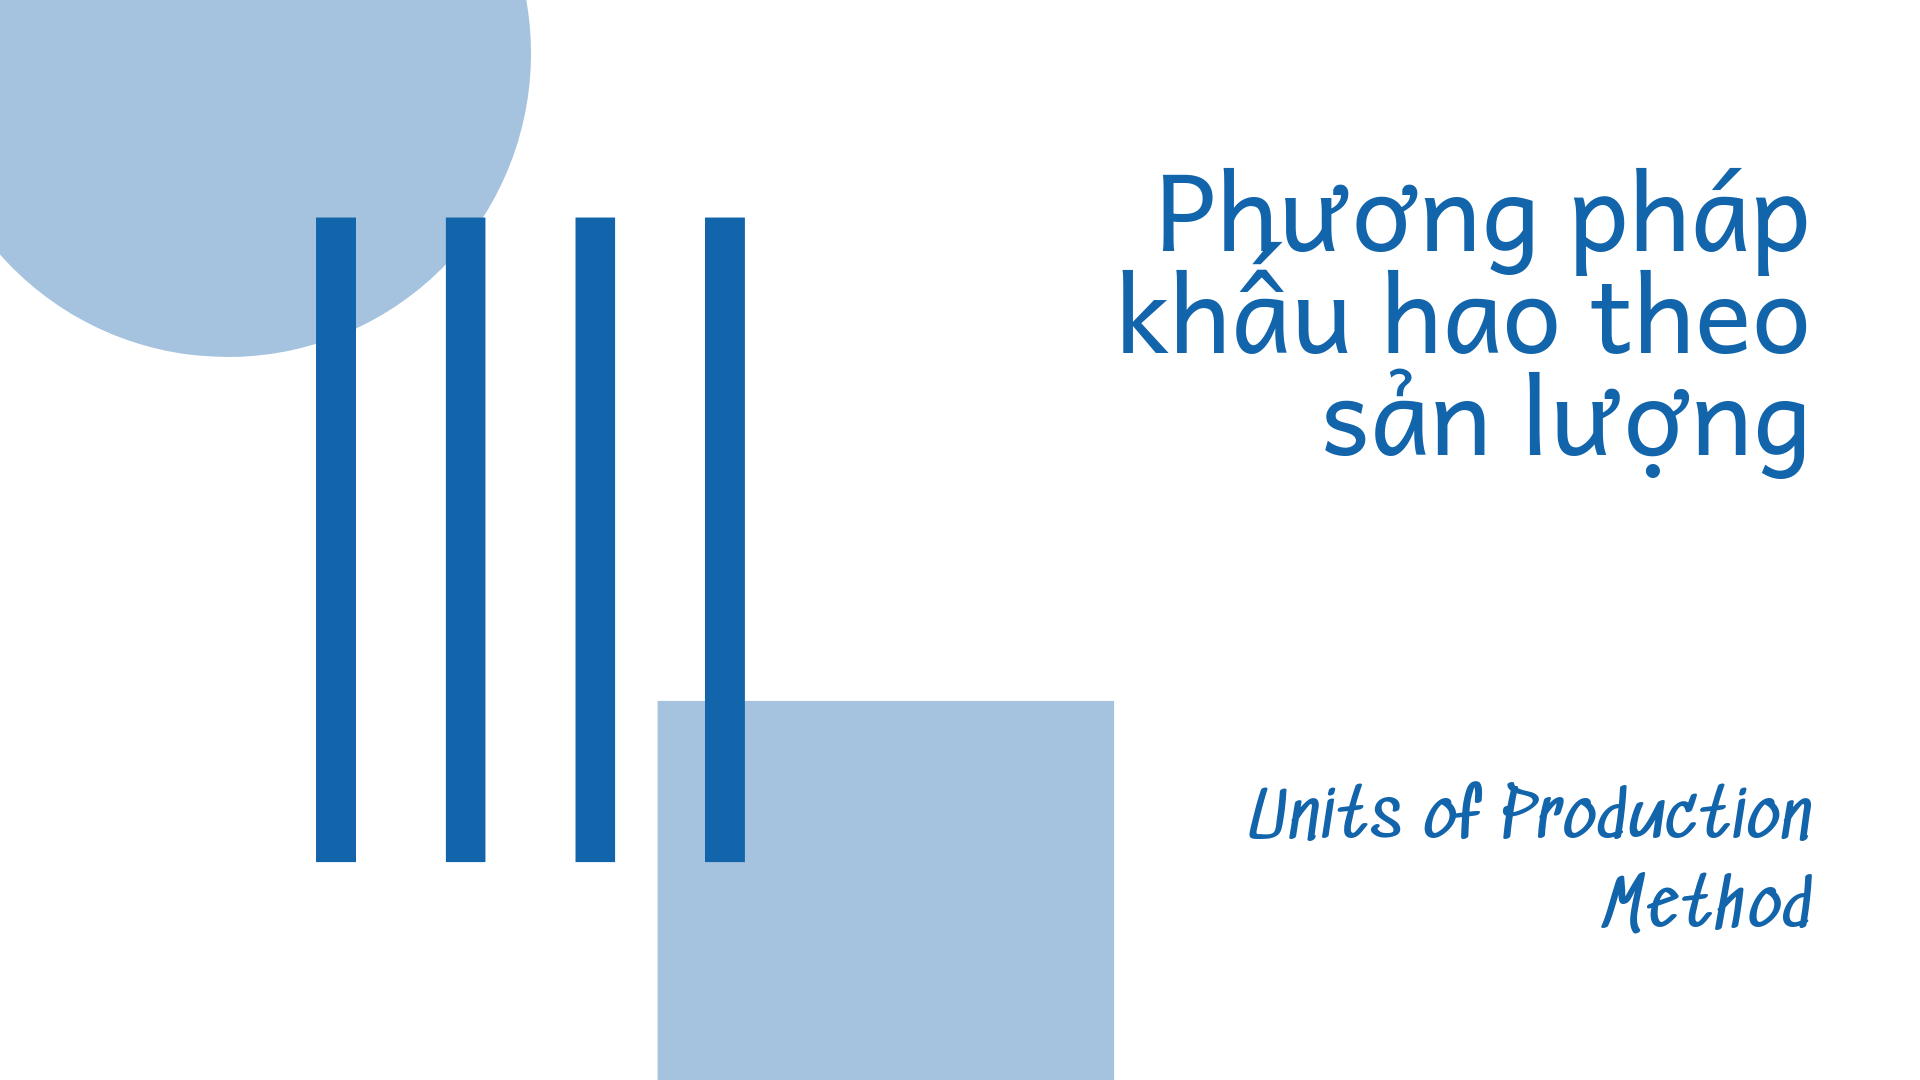 Phuong-phap-khau-hao-theo-so-luong-khoi-luong-san-pham